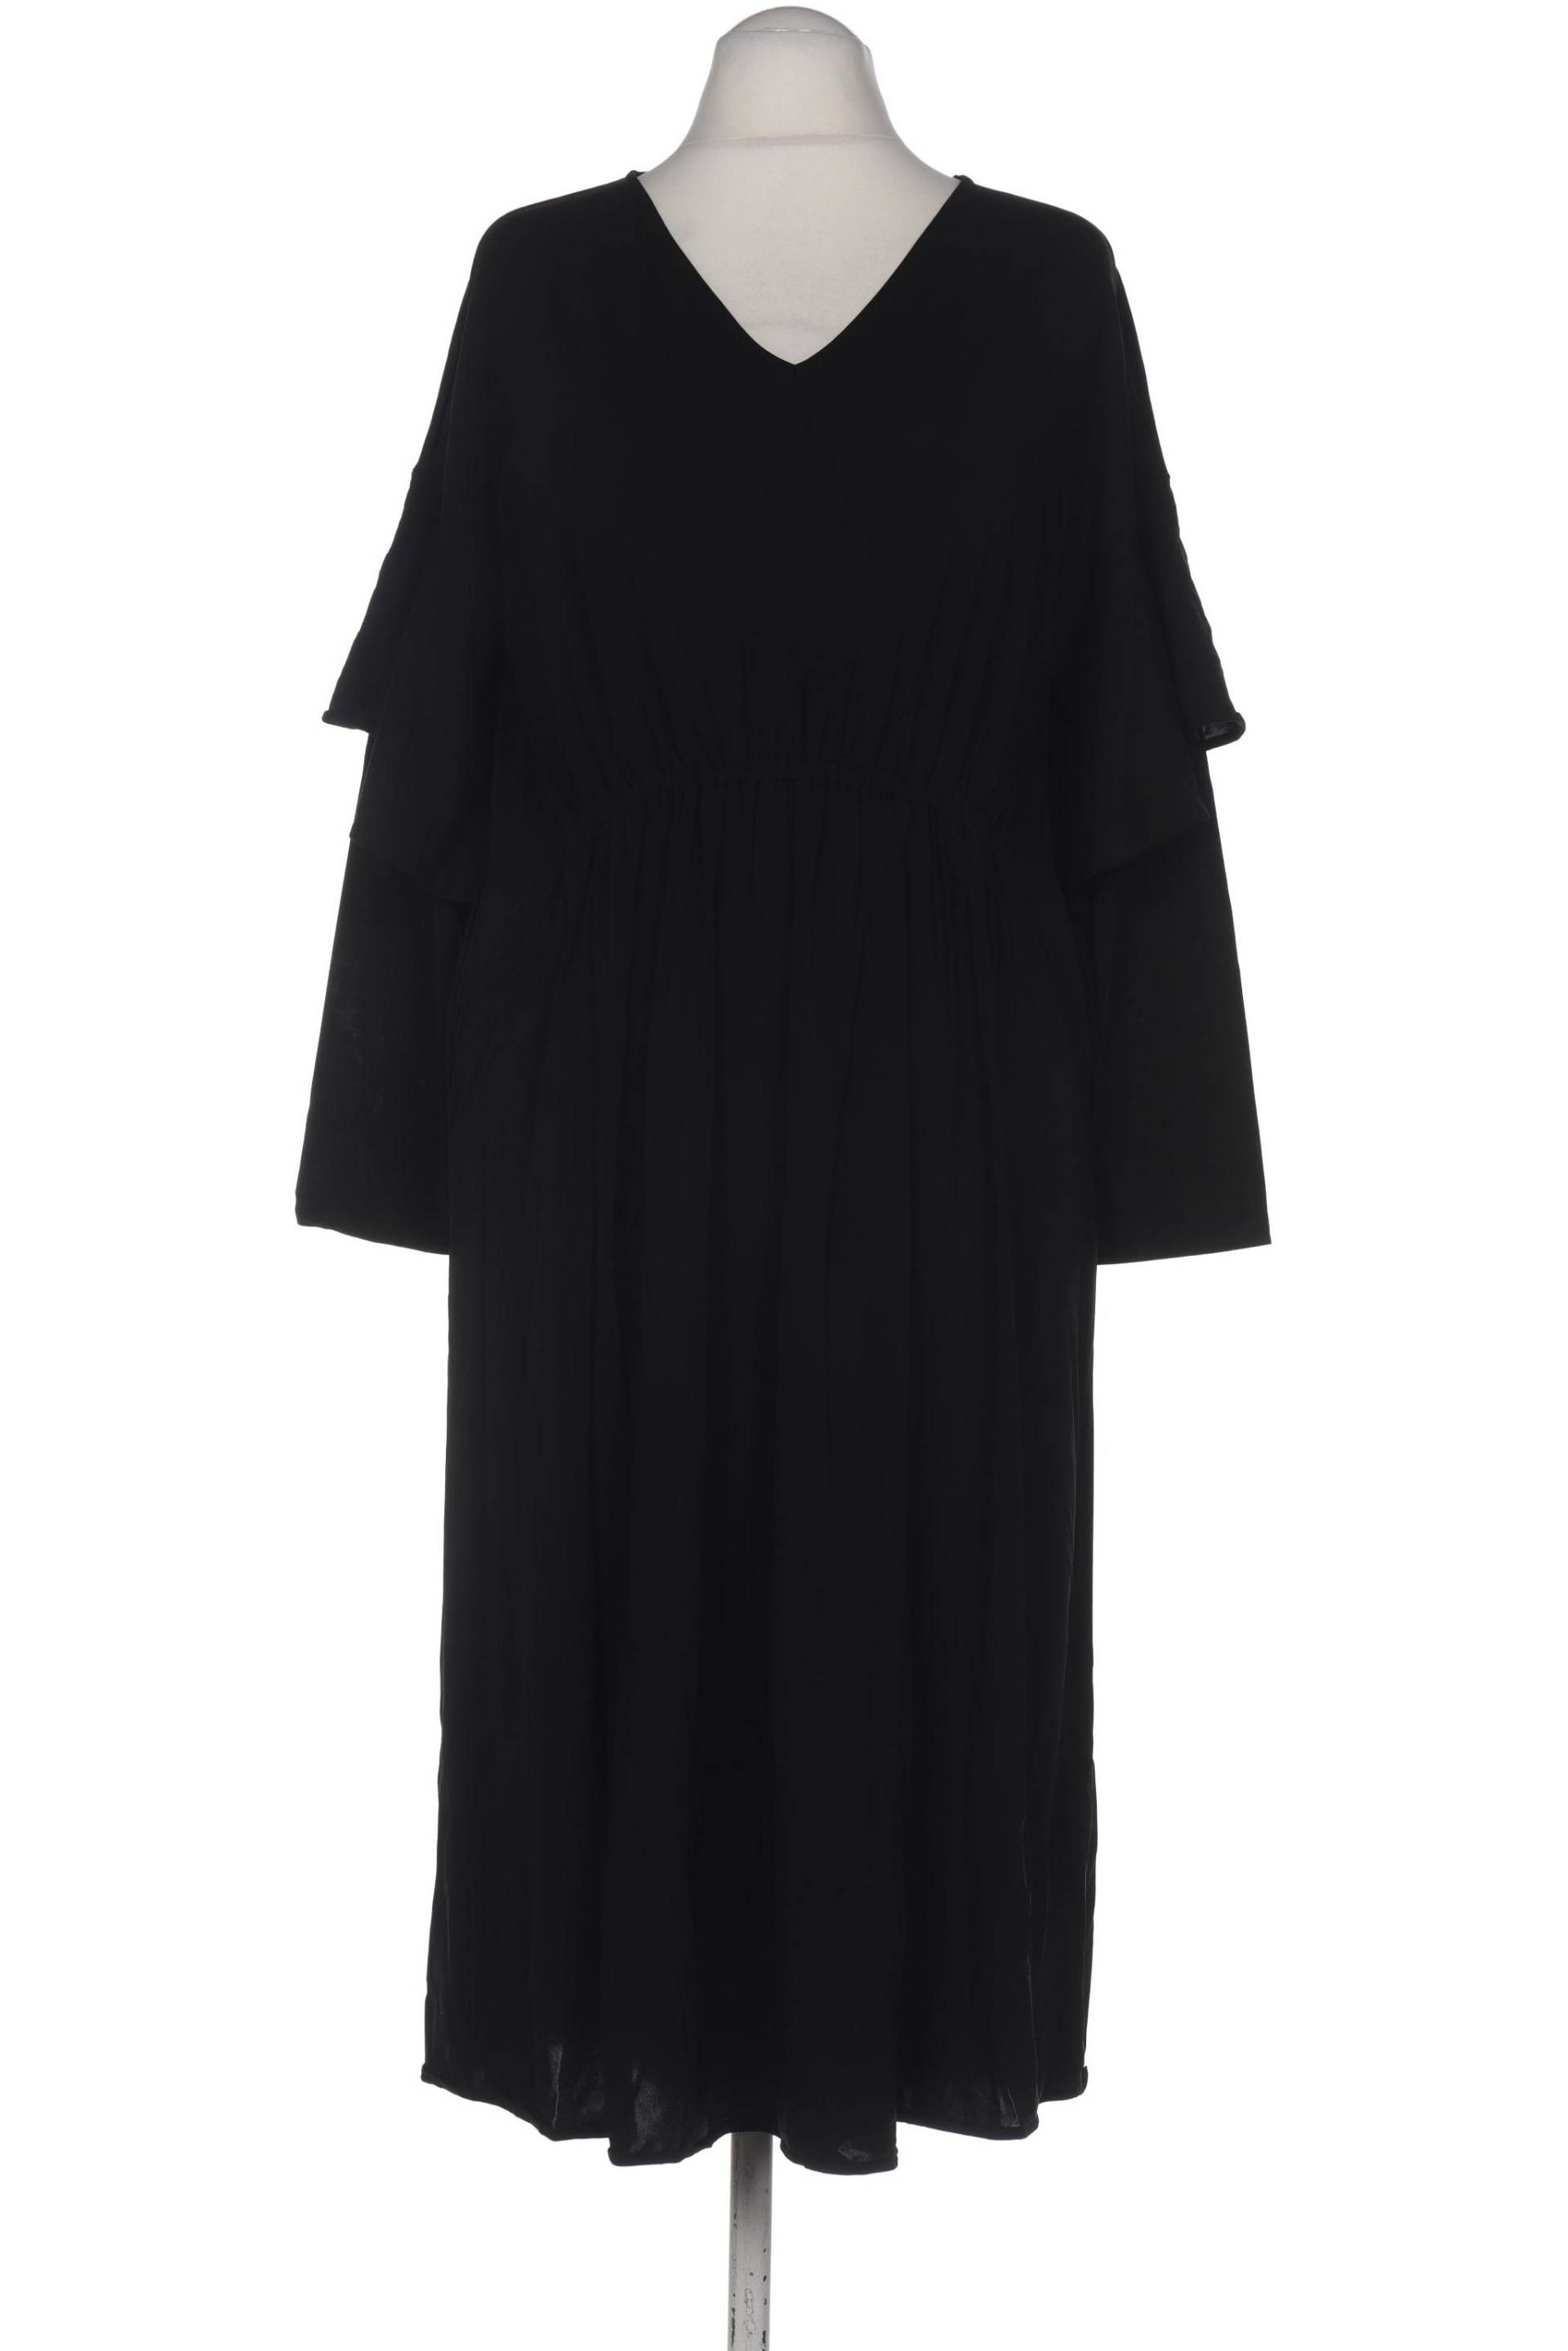 COS Damen Kleid, schwarz, Gr. 34 von COS